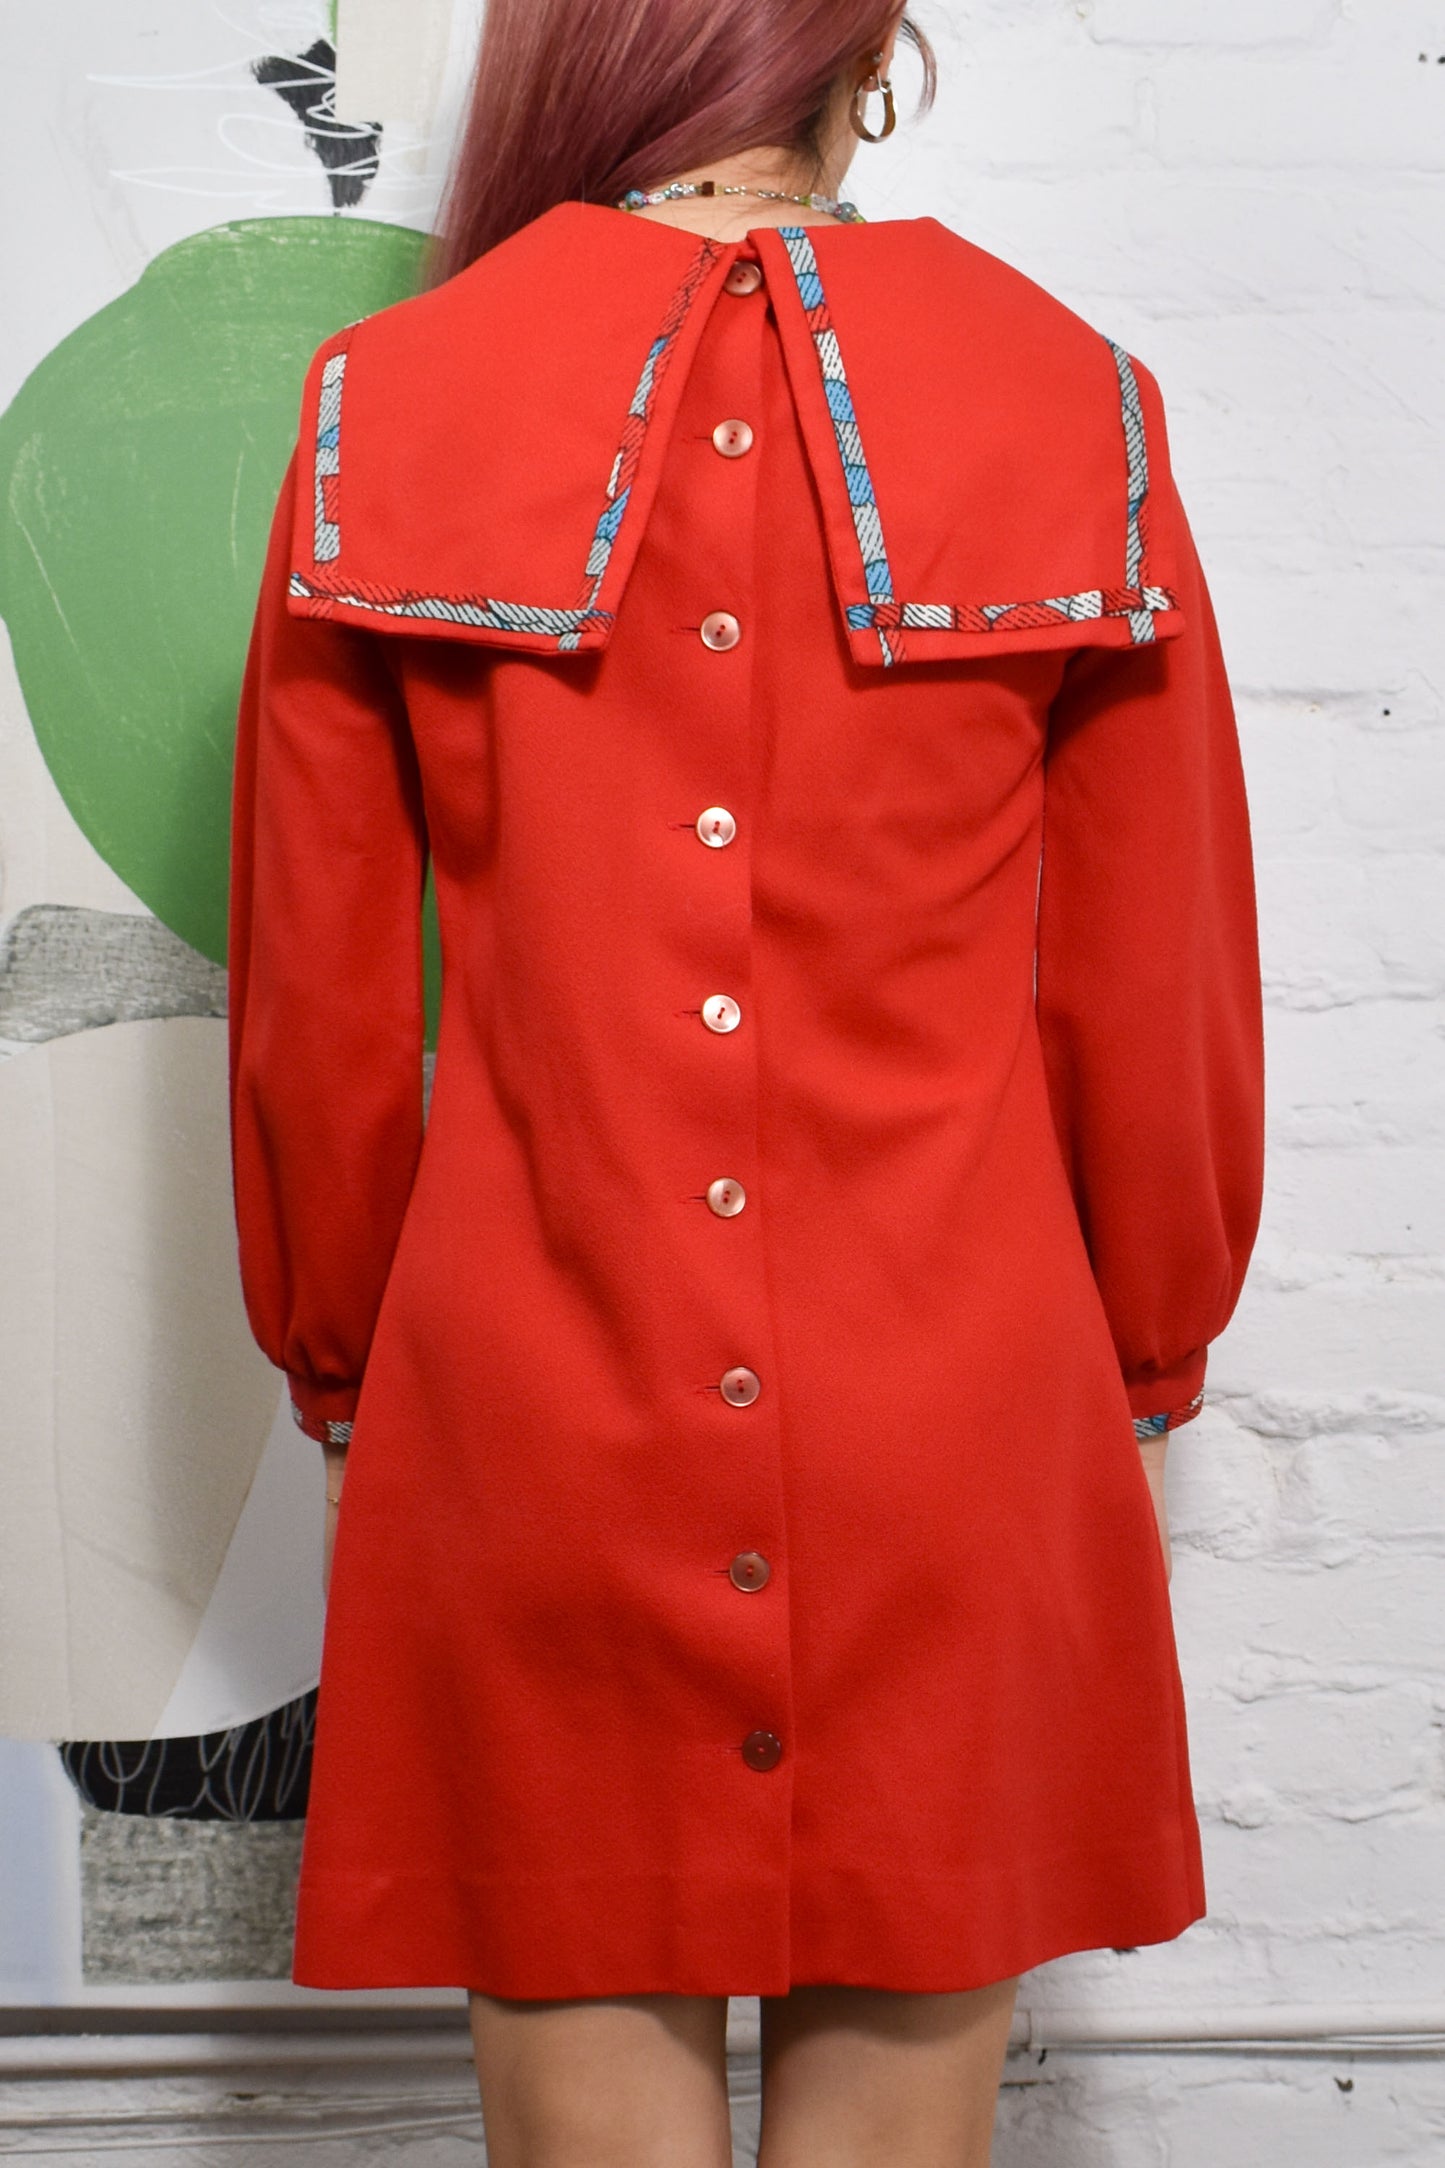 Vintage 60s "Teena Paige" Red Sailor Dress